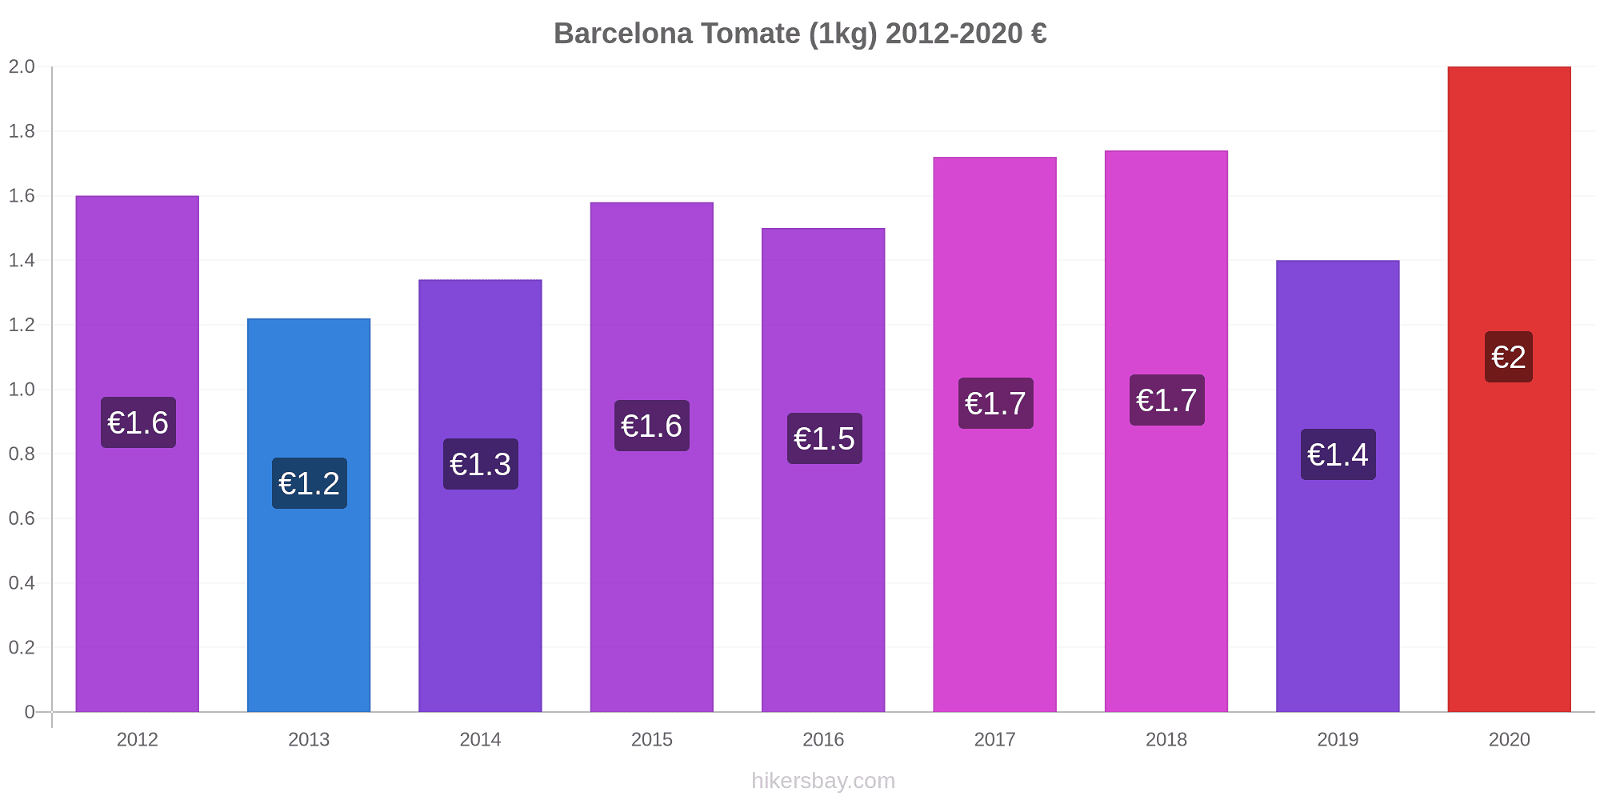 Barcelona cambios de precios Tomate (1kg) hikersbay.com